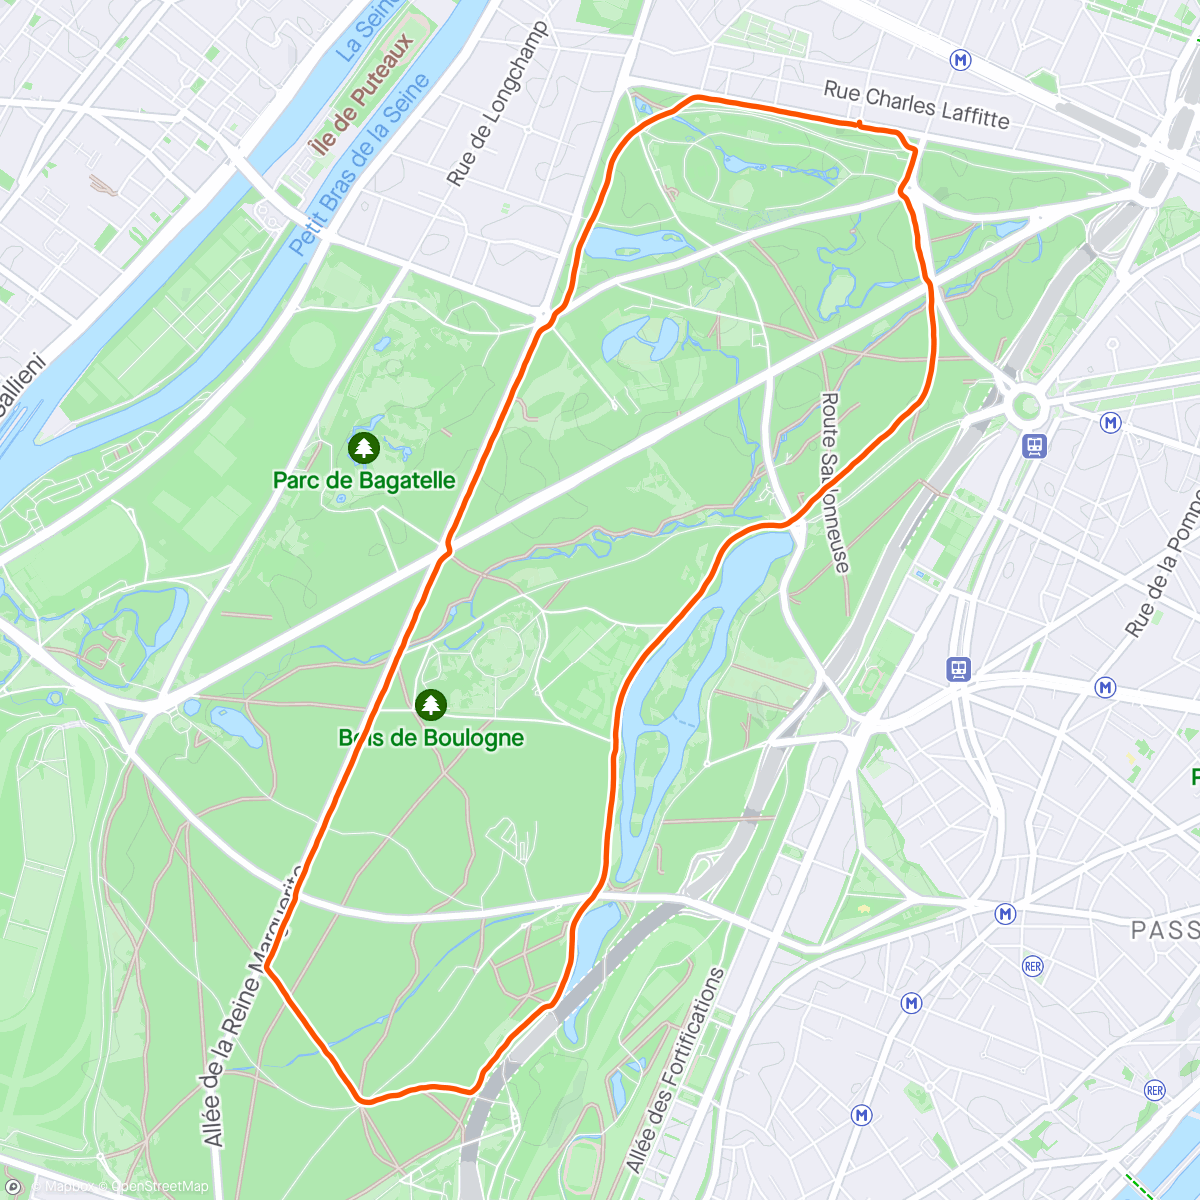 「Blablarun - Bois de Boulogne 🏃」活動的地圖